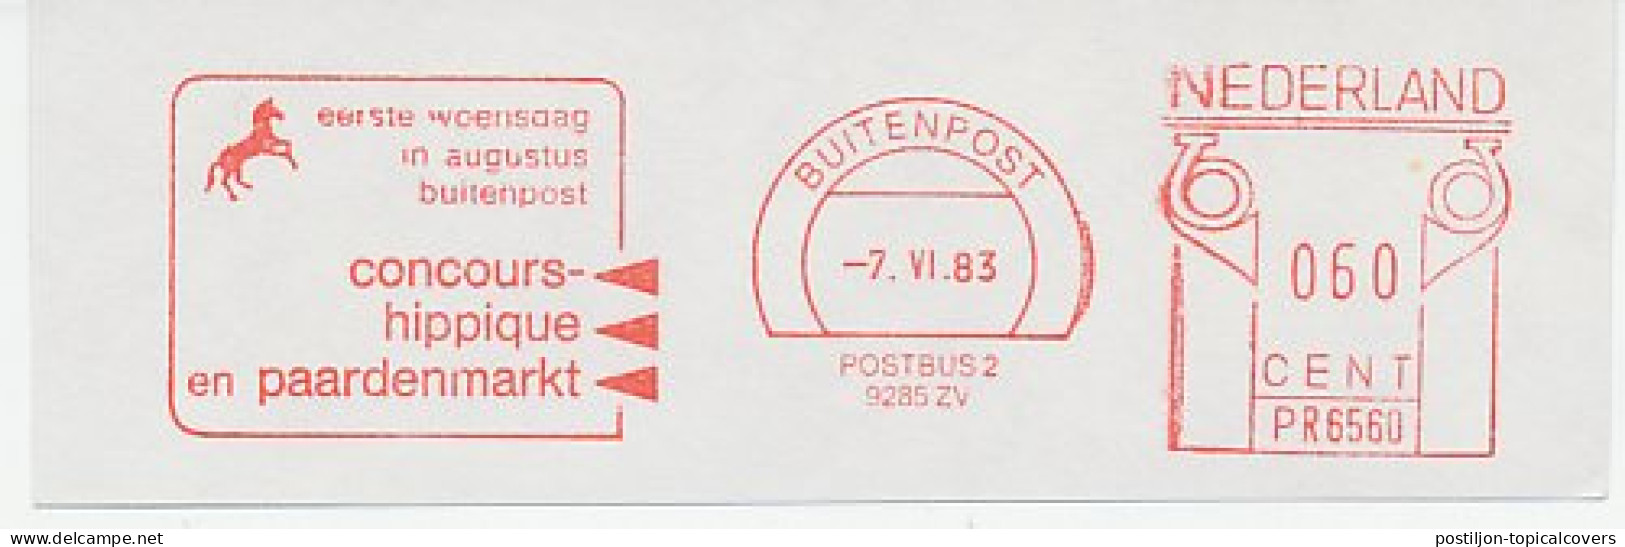 Meter Cut Netherlands 1983 Horse Contest - Horse Market - Concours Hippique - Reitsport